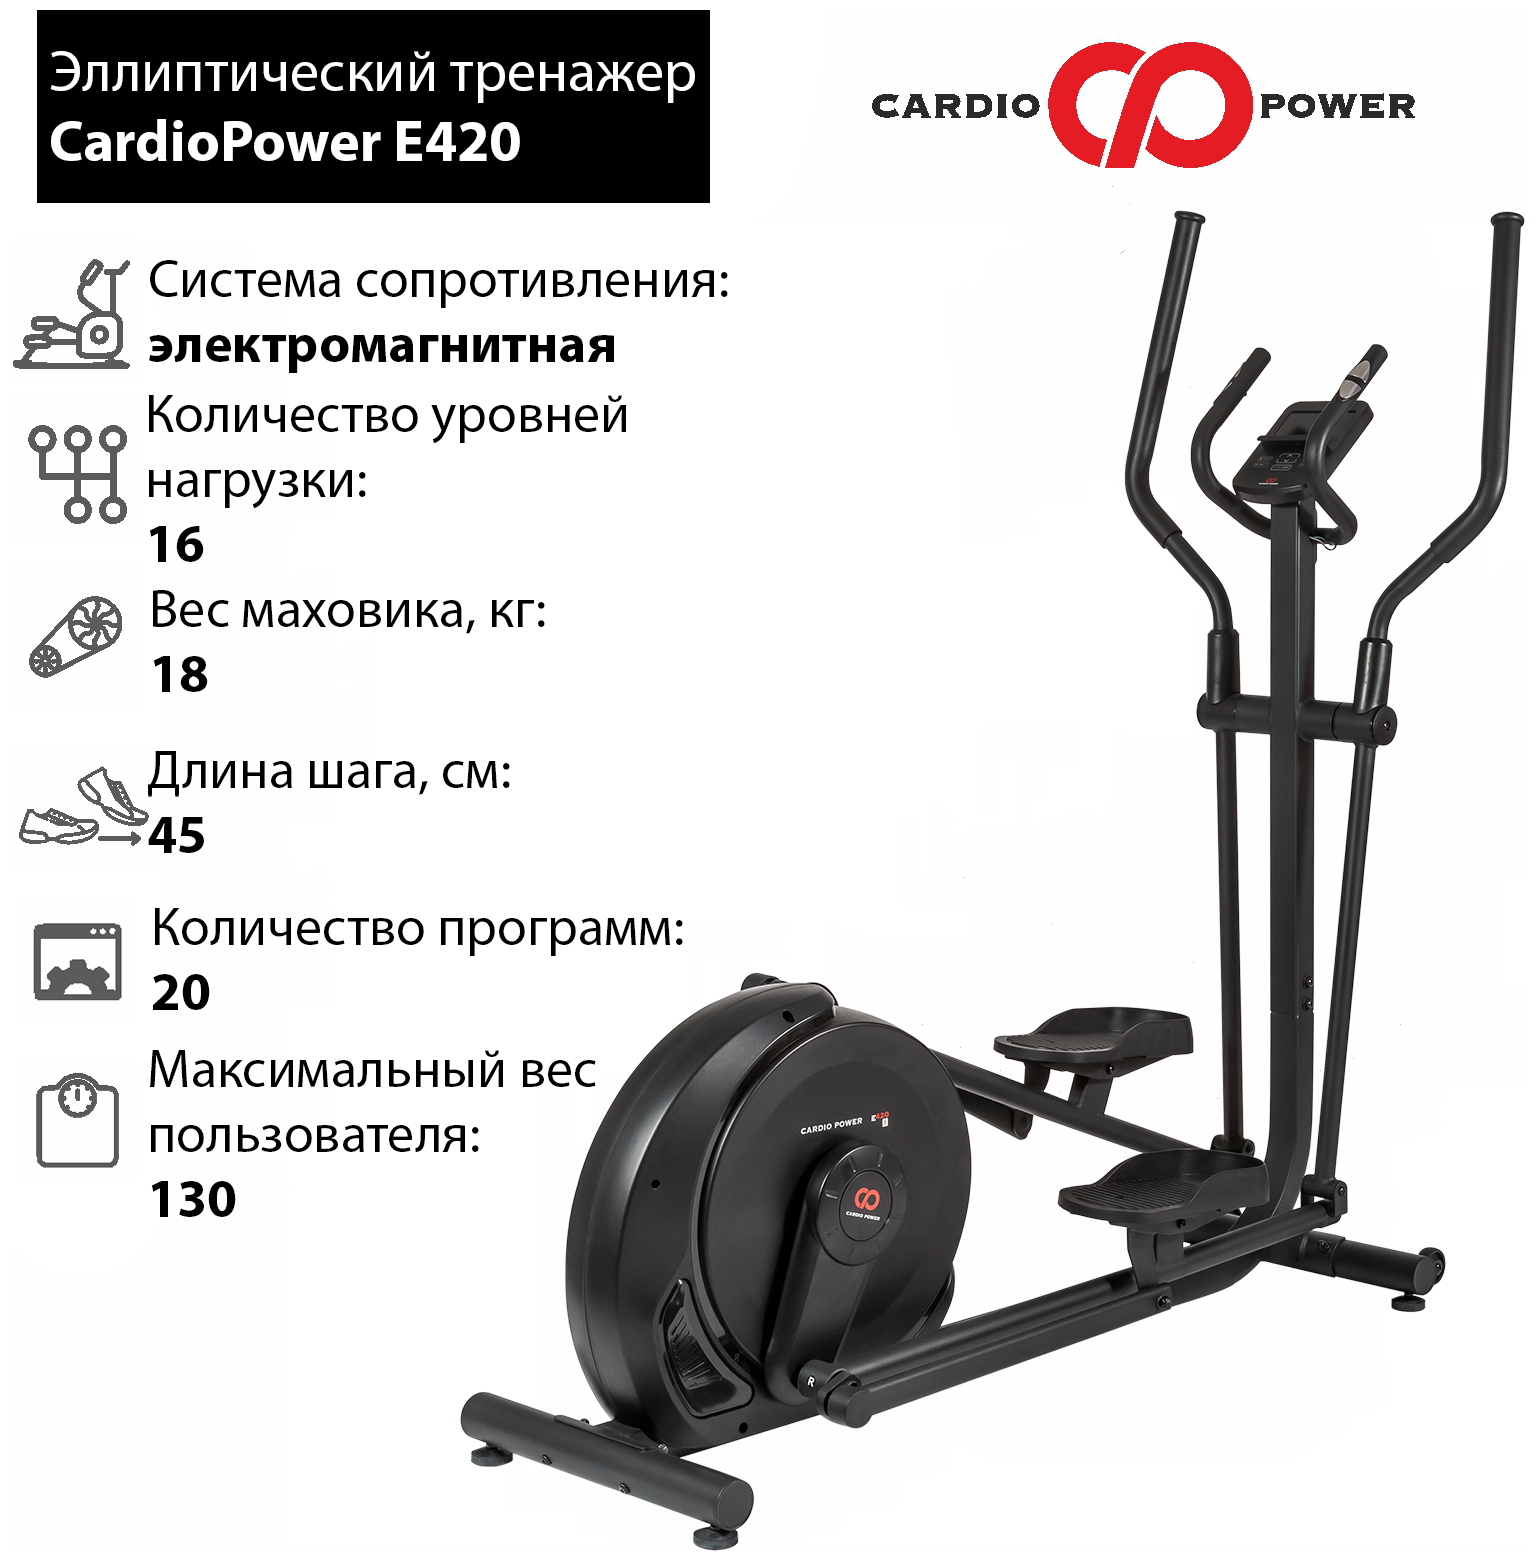 Эллиптический тренажер CardioPower E420